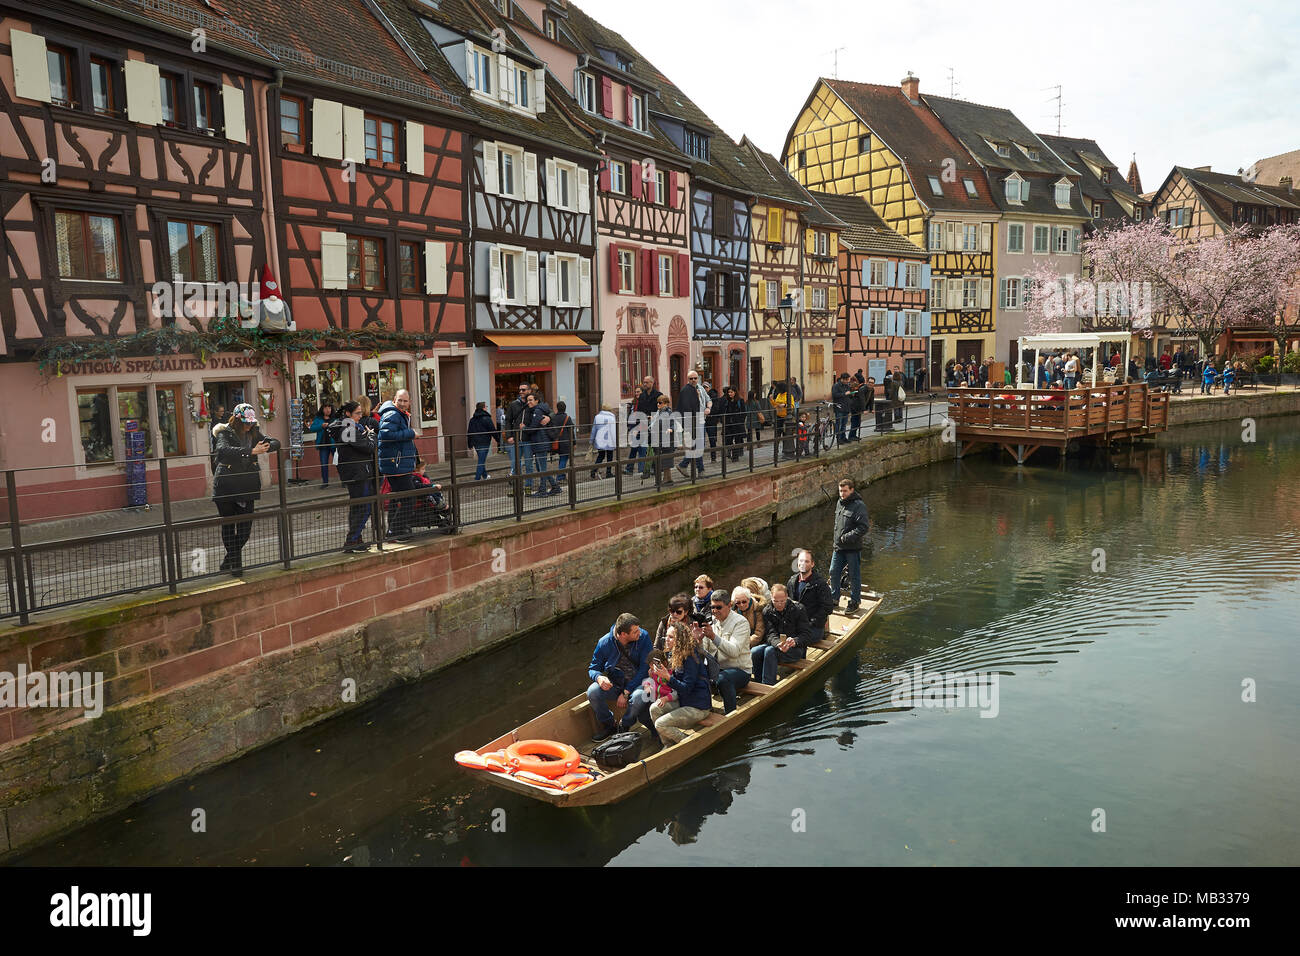 Bateau de tourisme et des maisons à colombages sur le canal de la vieille ville, la Petite Venise, Colmar, Alsace, France Banque D'Images